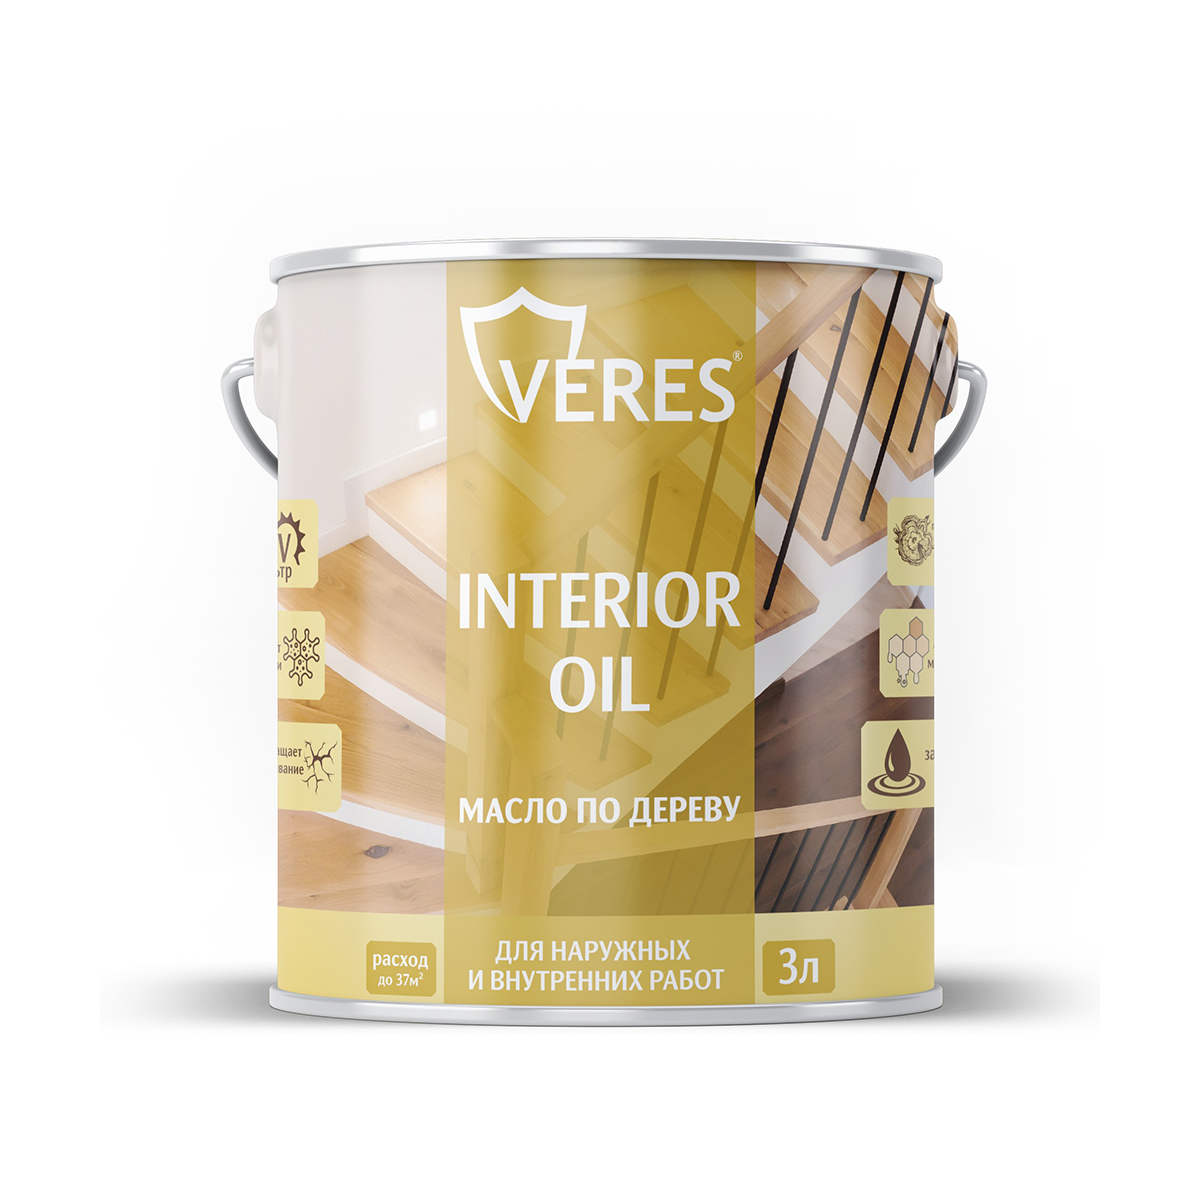 Масло для дерева Veres Interior Oil, 3 л, сосна - купить в ООО "Кол-Сервис", цена на Мегамаркет